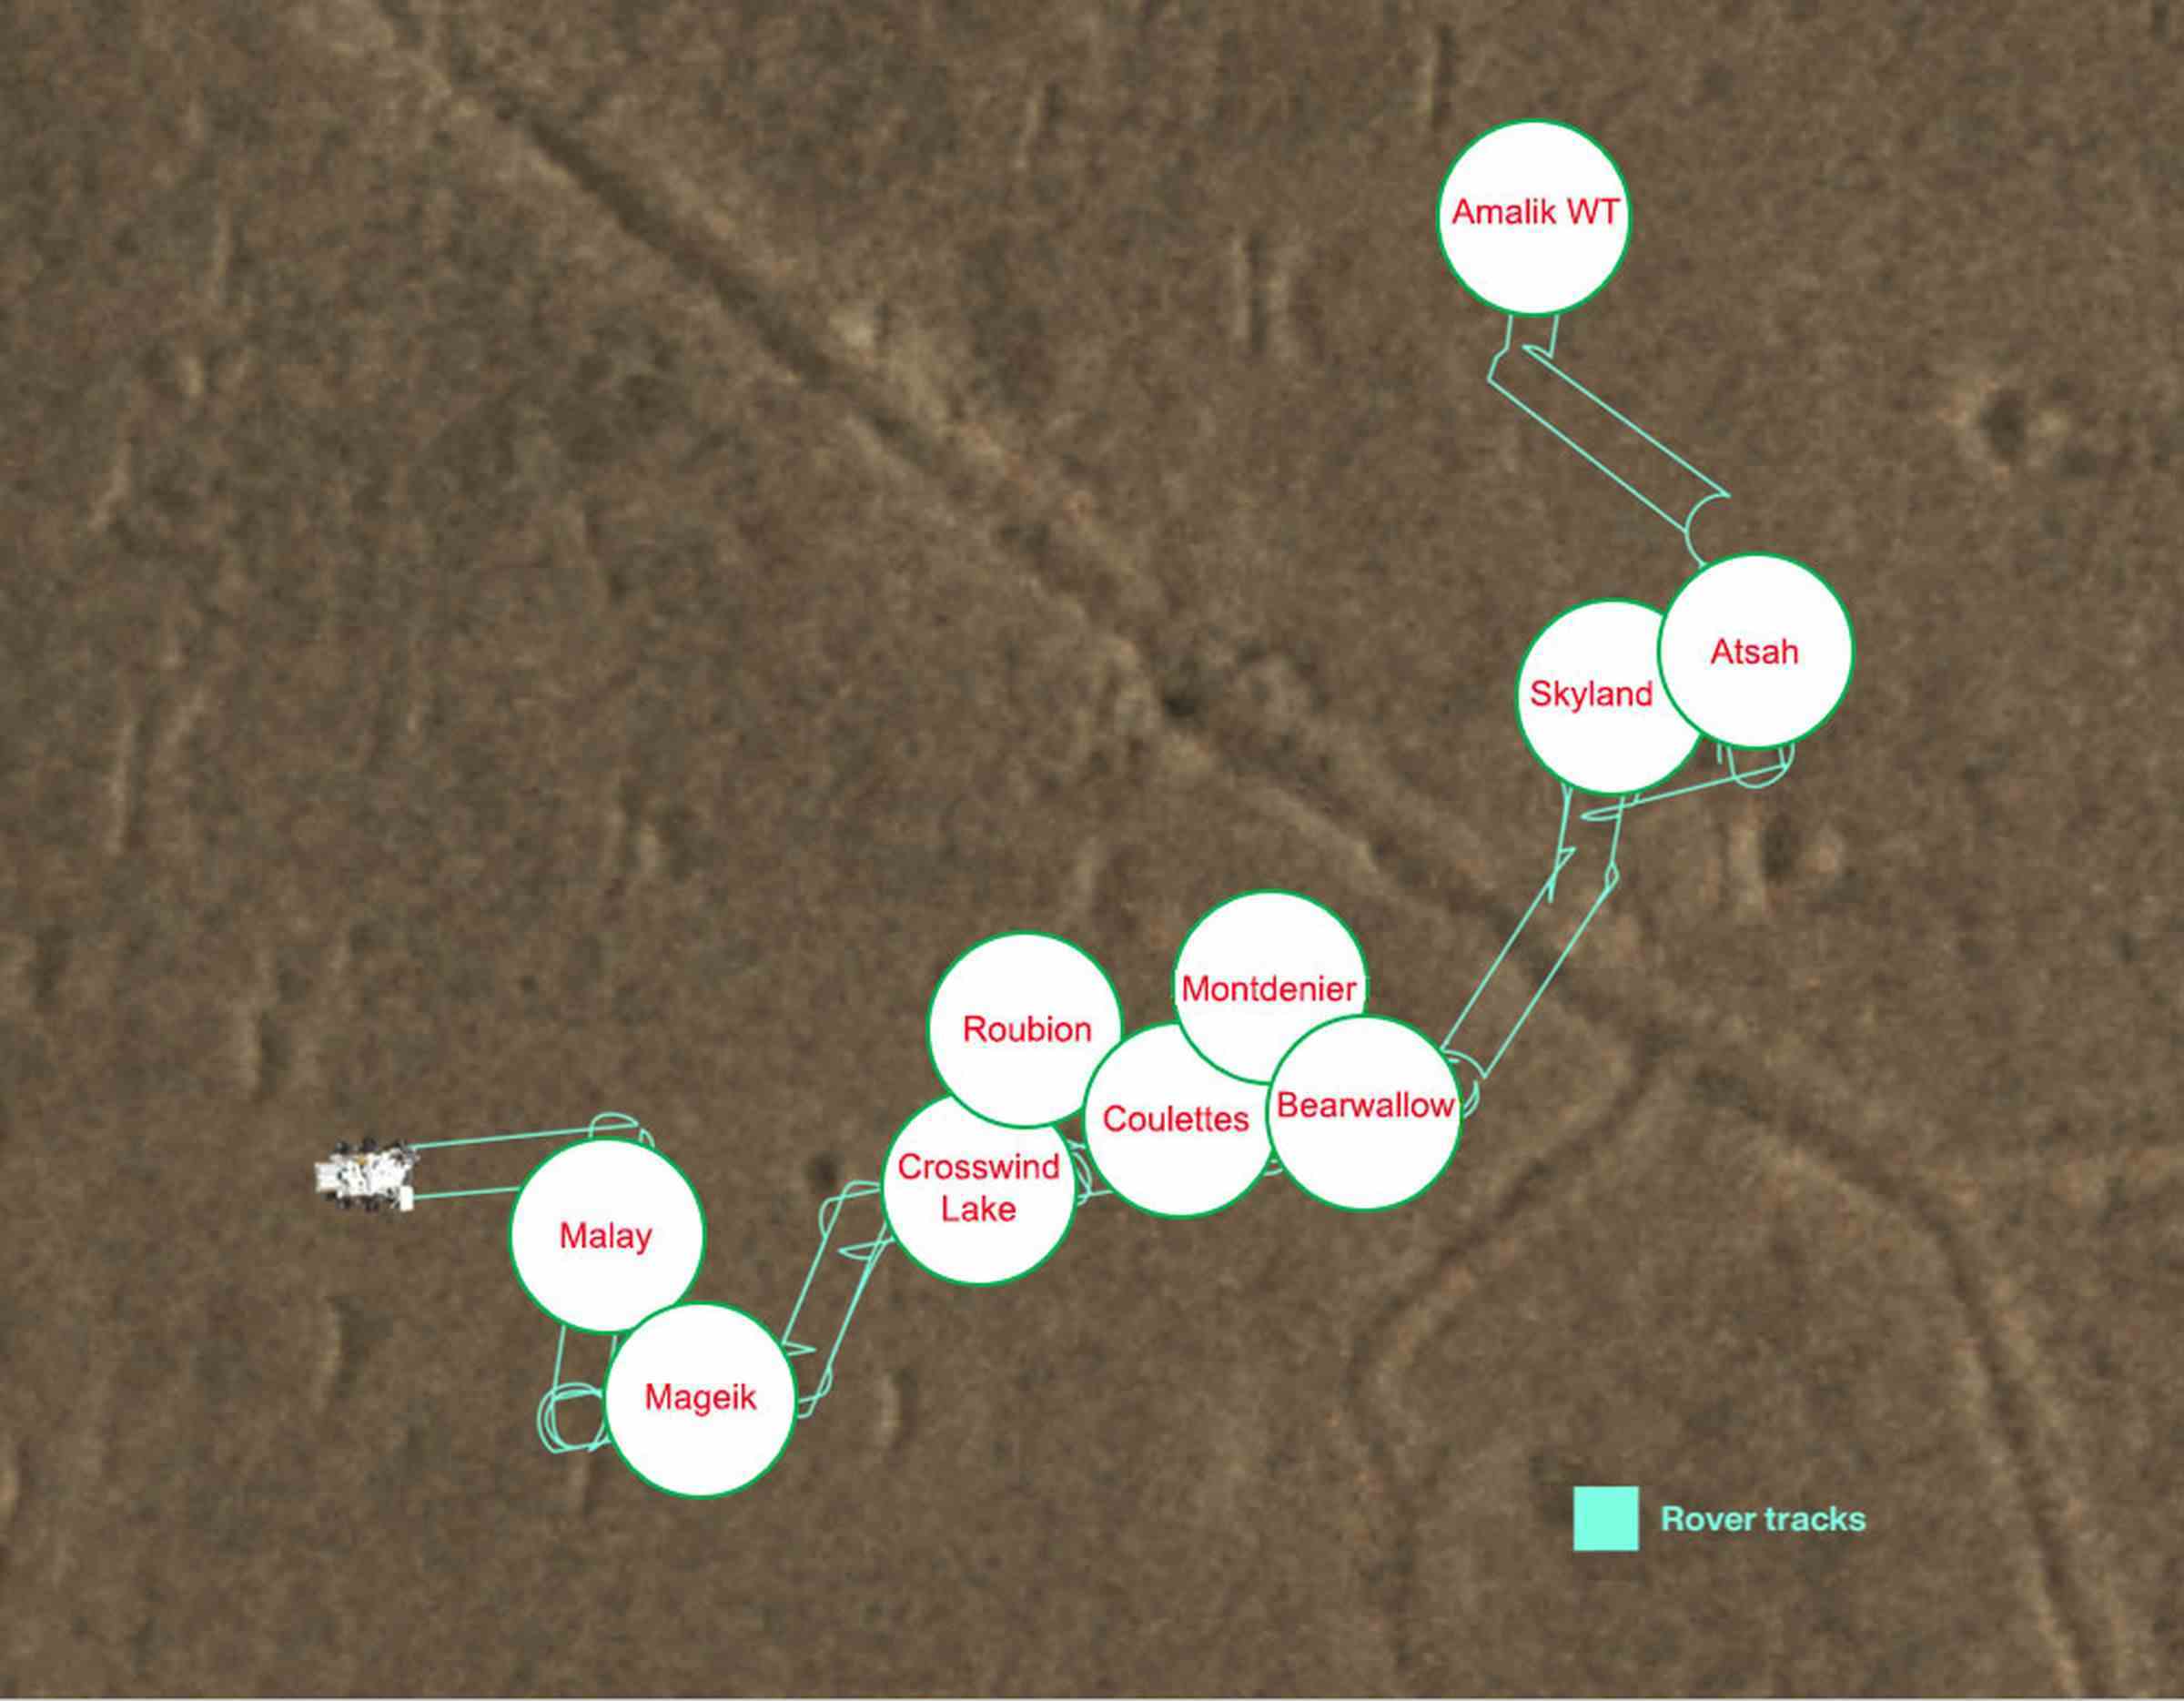 Mars numune iade görevinin numune deposundaki her tüpün konumlarını gösteren bir harita.